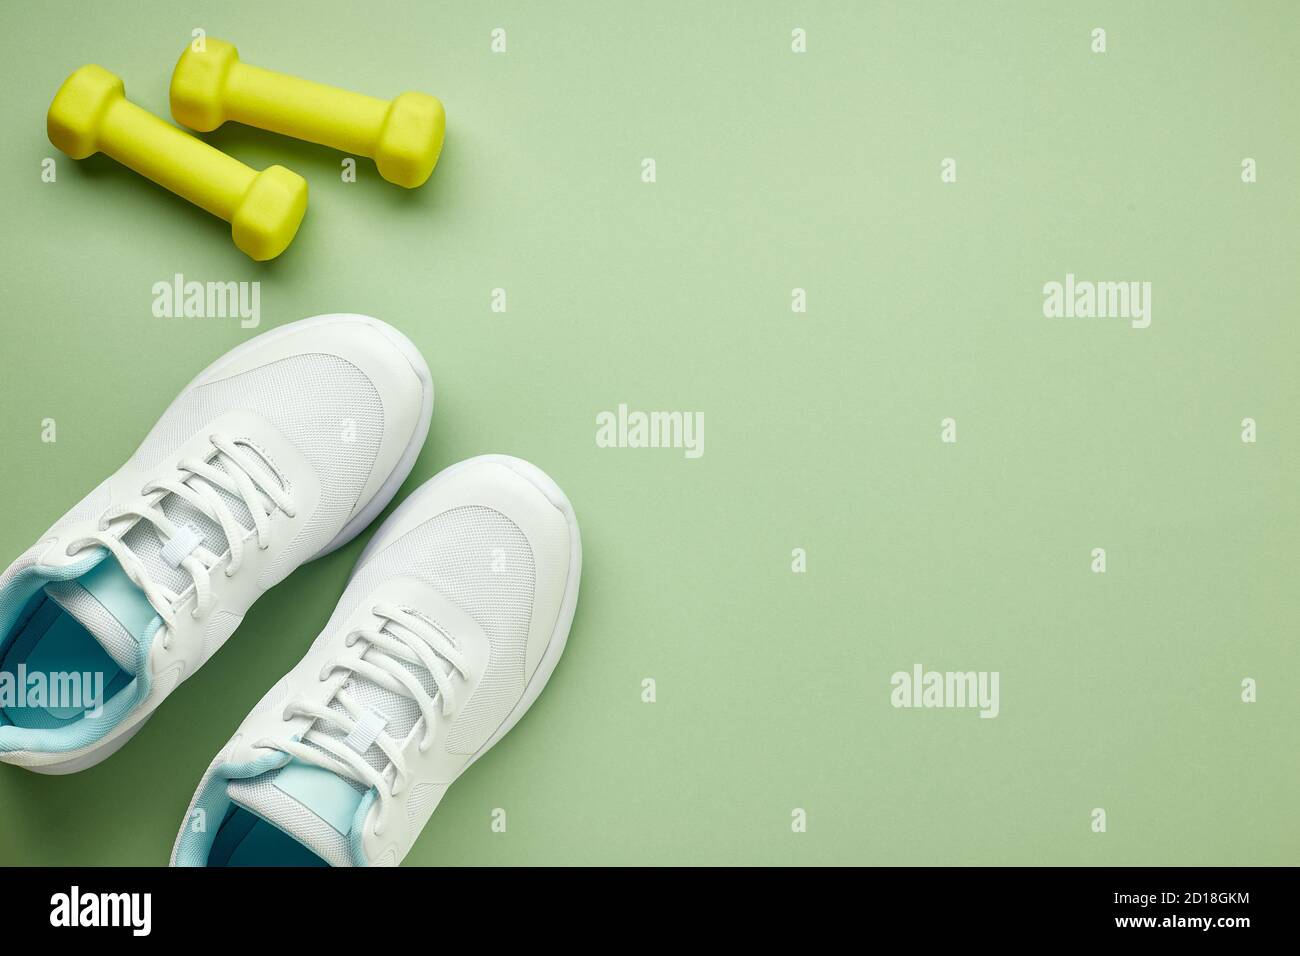 Kreative flache Lay von Sport- und Fitnessgeräten. Weiße Damen Sneaker und  grüne Hanteln auf hellgrünem Hintergrund Stockfotografie - Alamy